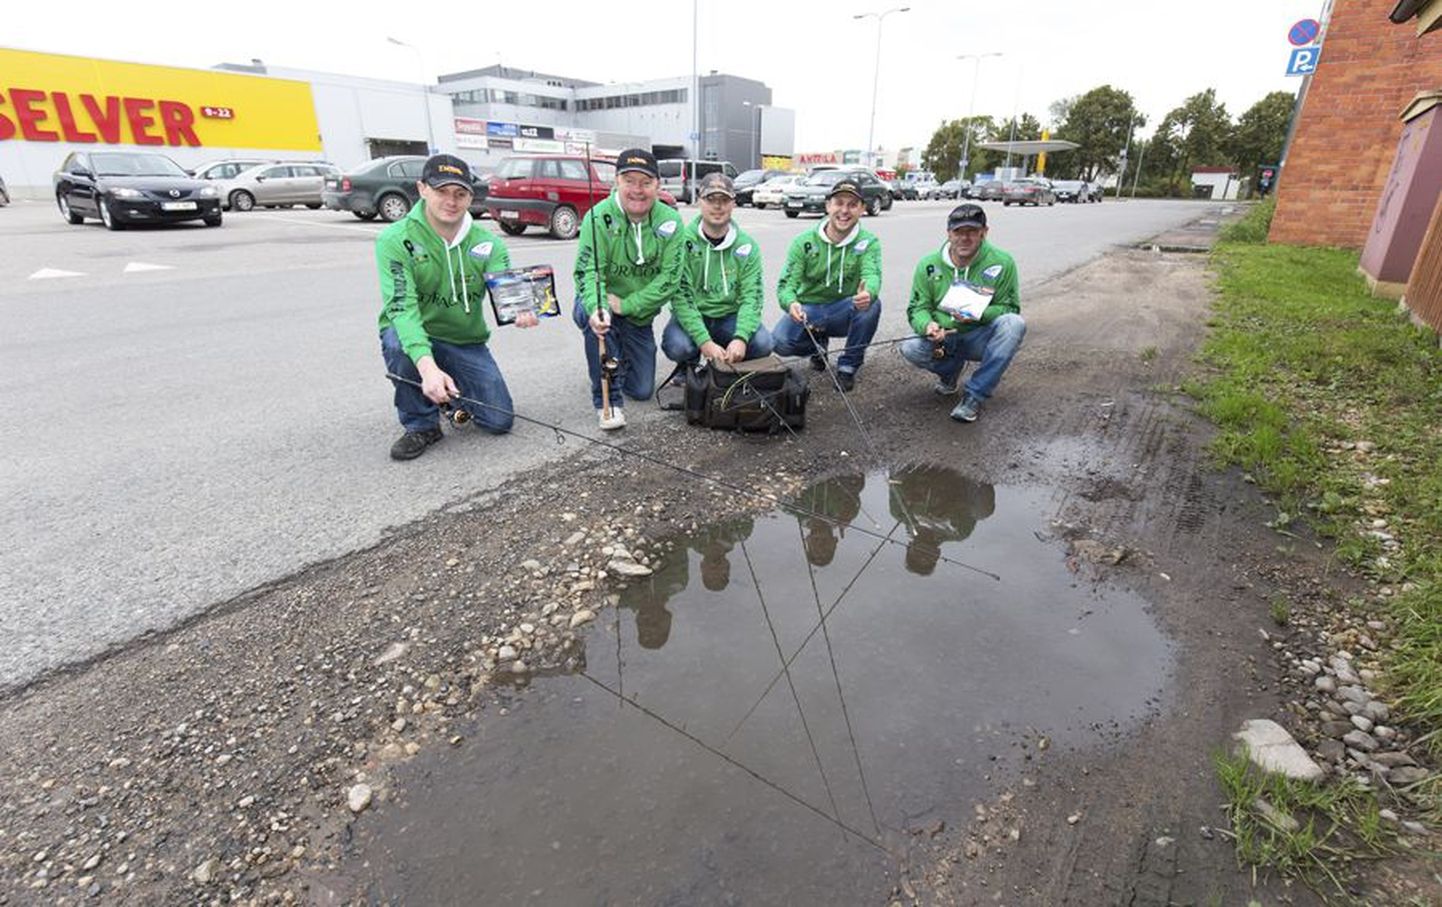 Et eile võistlejaid veel Viljandi järvele ei lubatud, näitas linnaga tutvuv Iiri meeskond oma varustust Centrumi taga parklas, kus leidus ka väike veesilm.